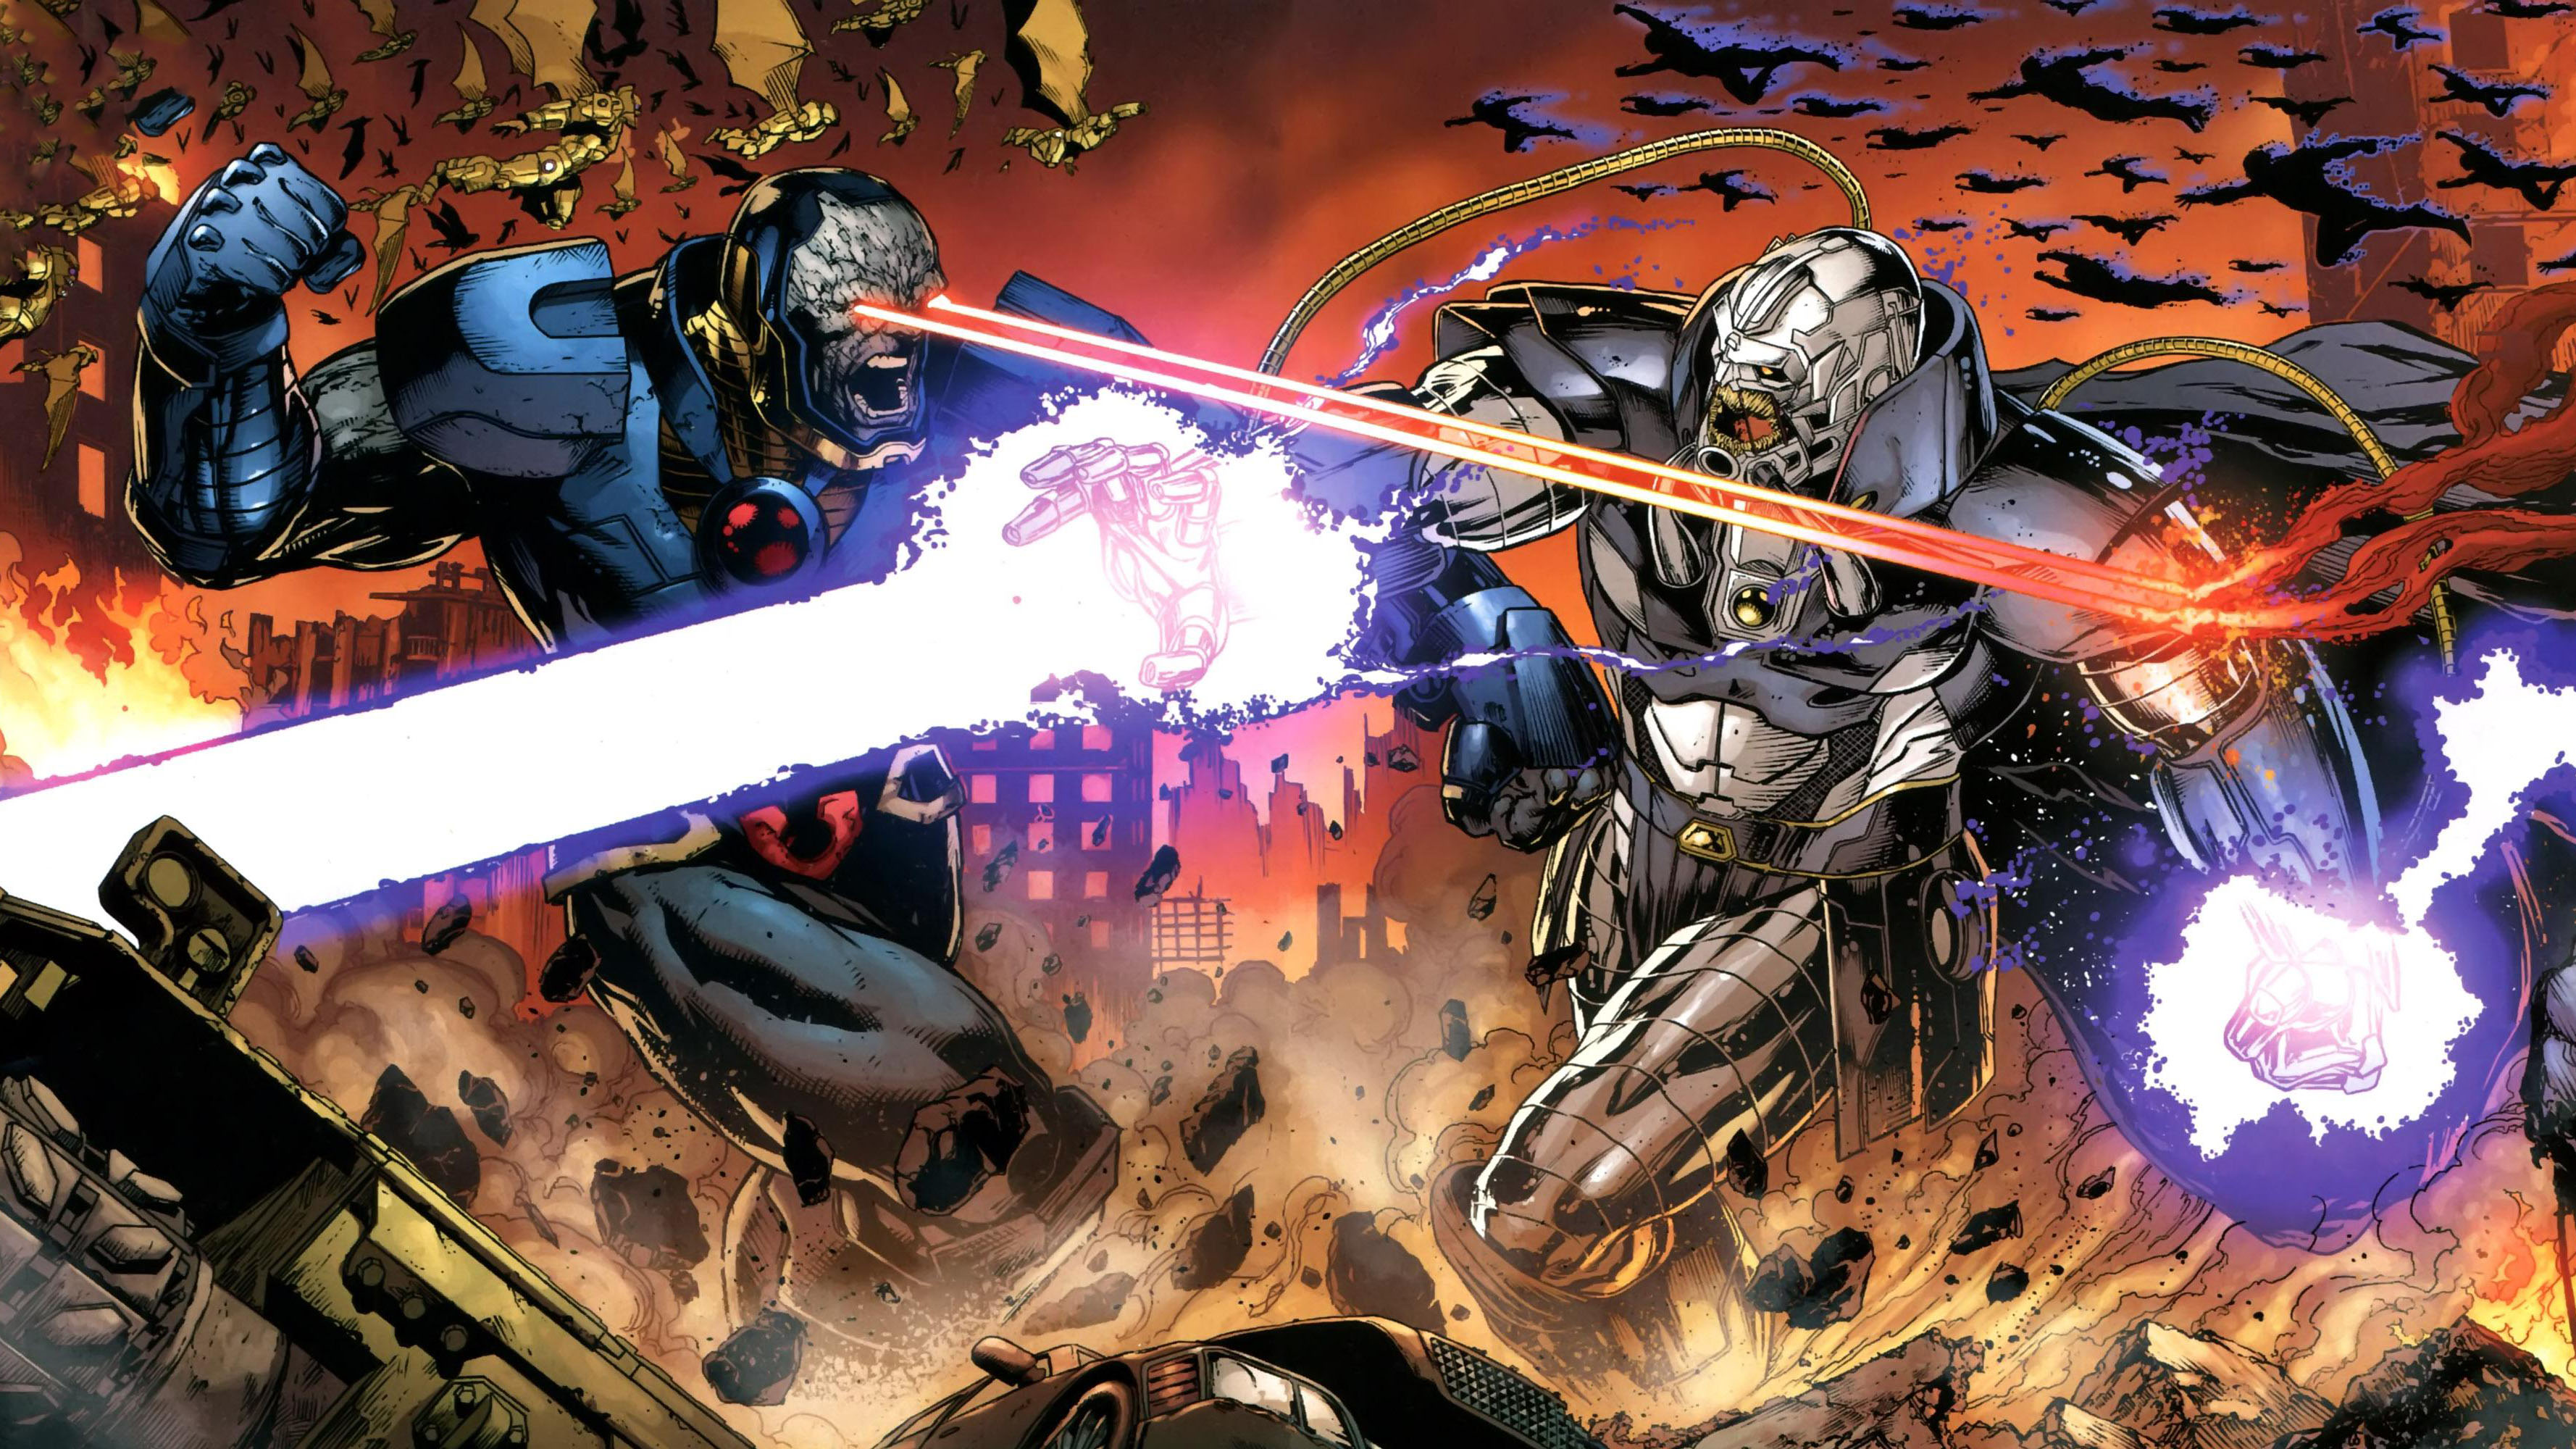 comics, darkseid war, darkseid (dc comics)